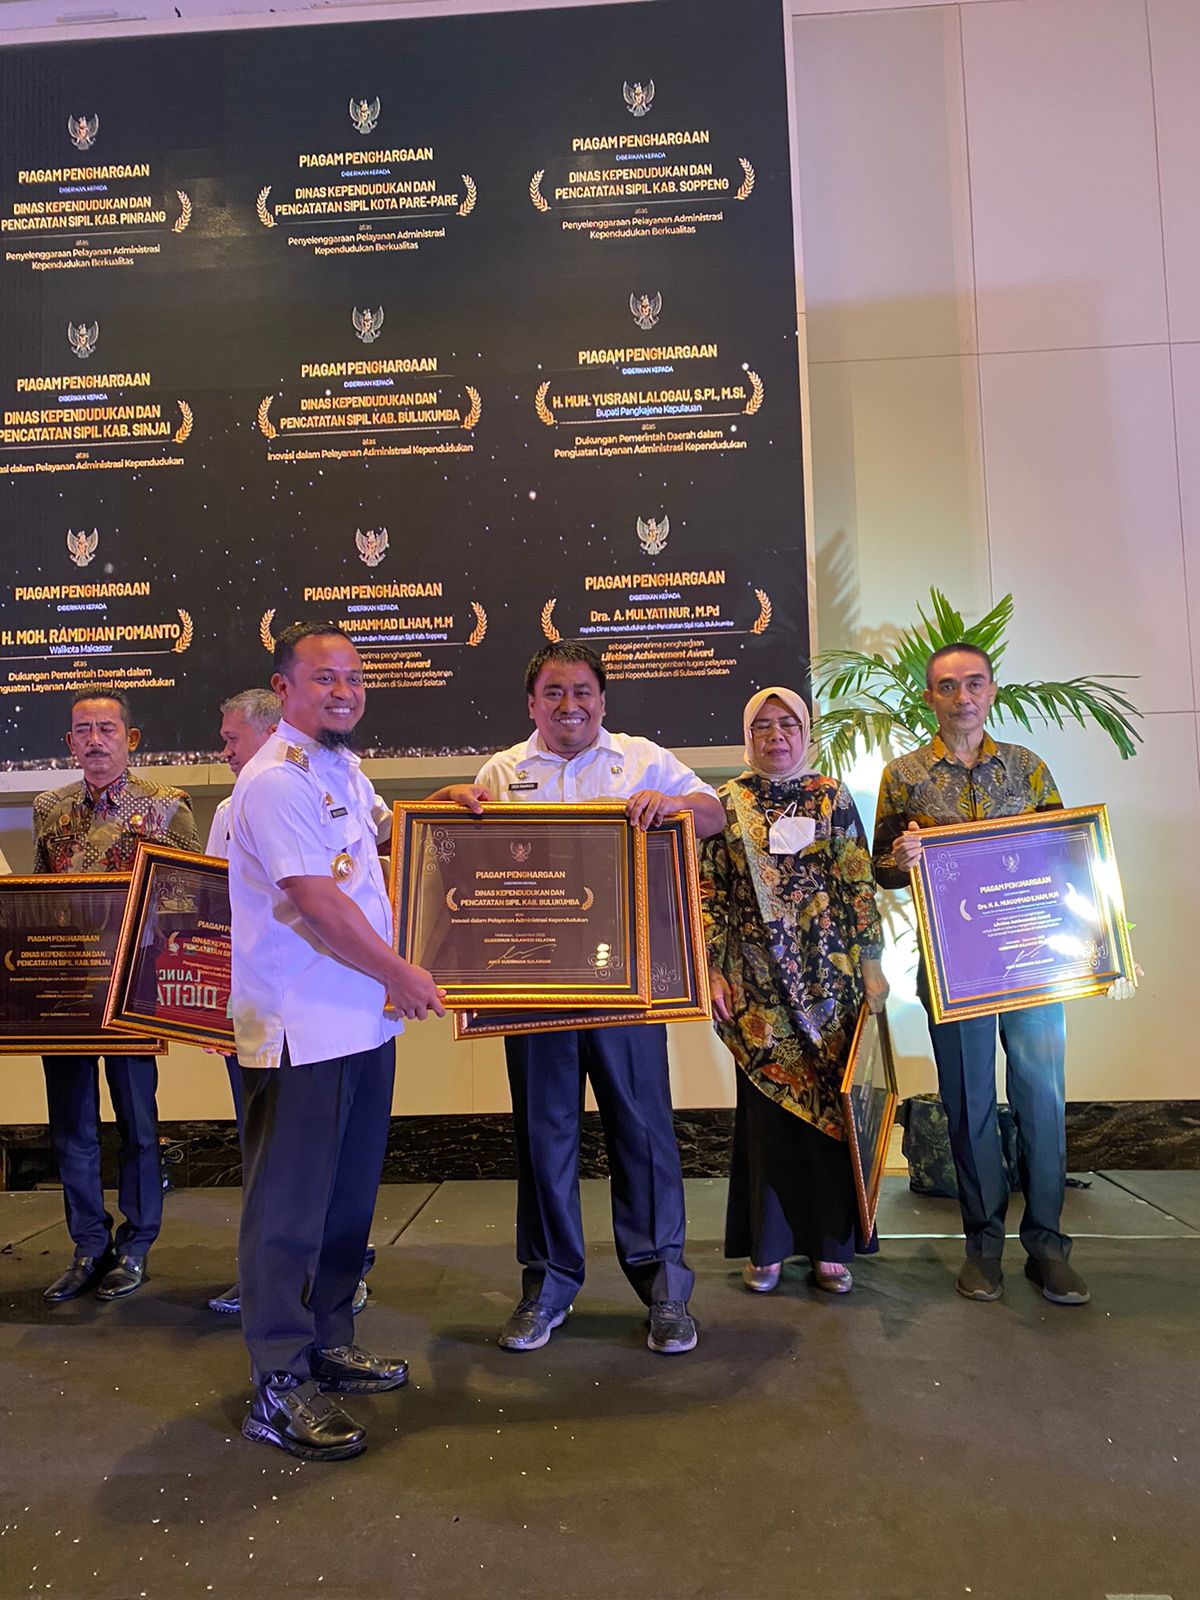 Kabupaten Bulukumba menerima 3 penghargaan sekaligus dari Gubernur Sulawesi Selatan.